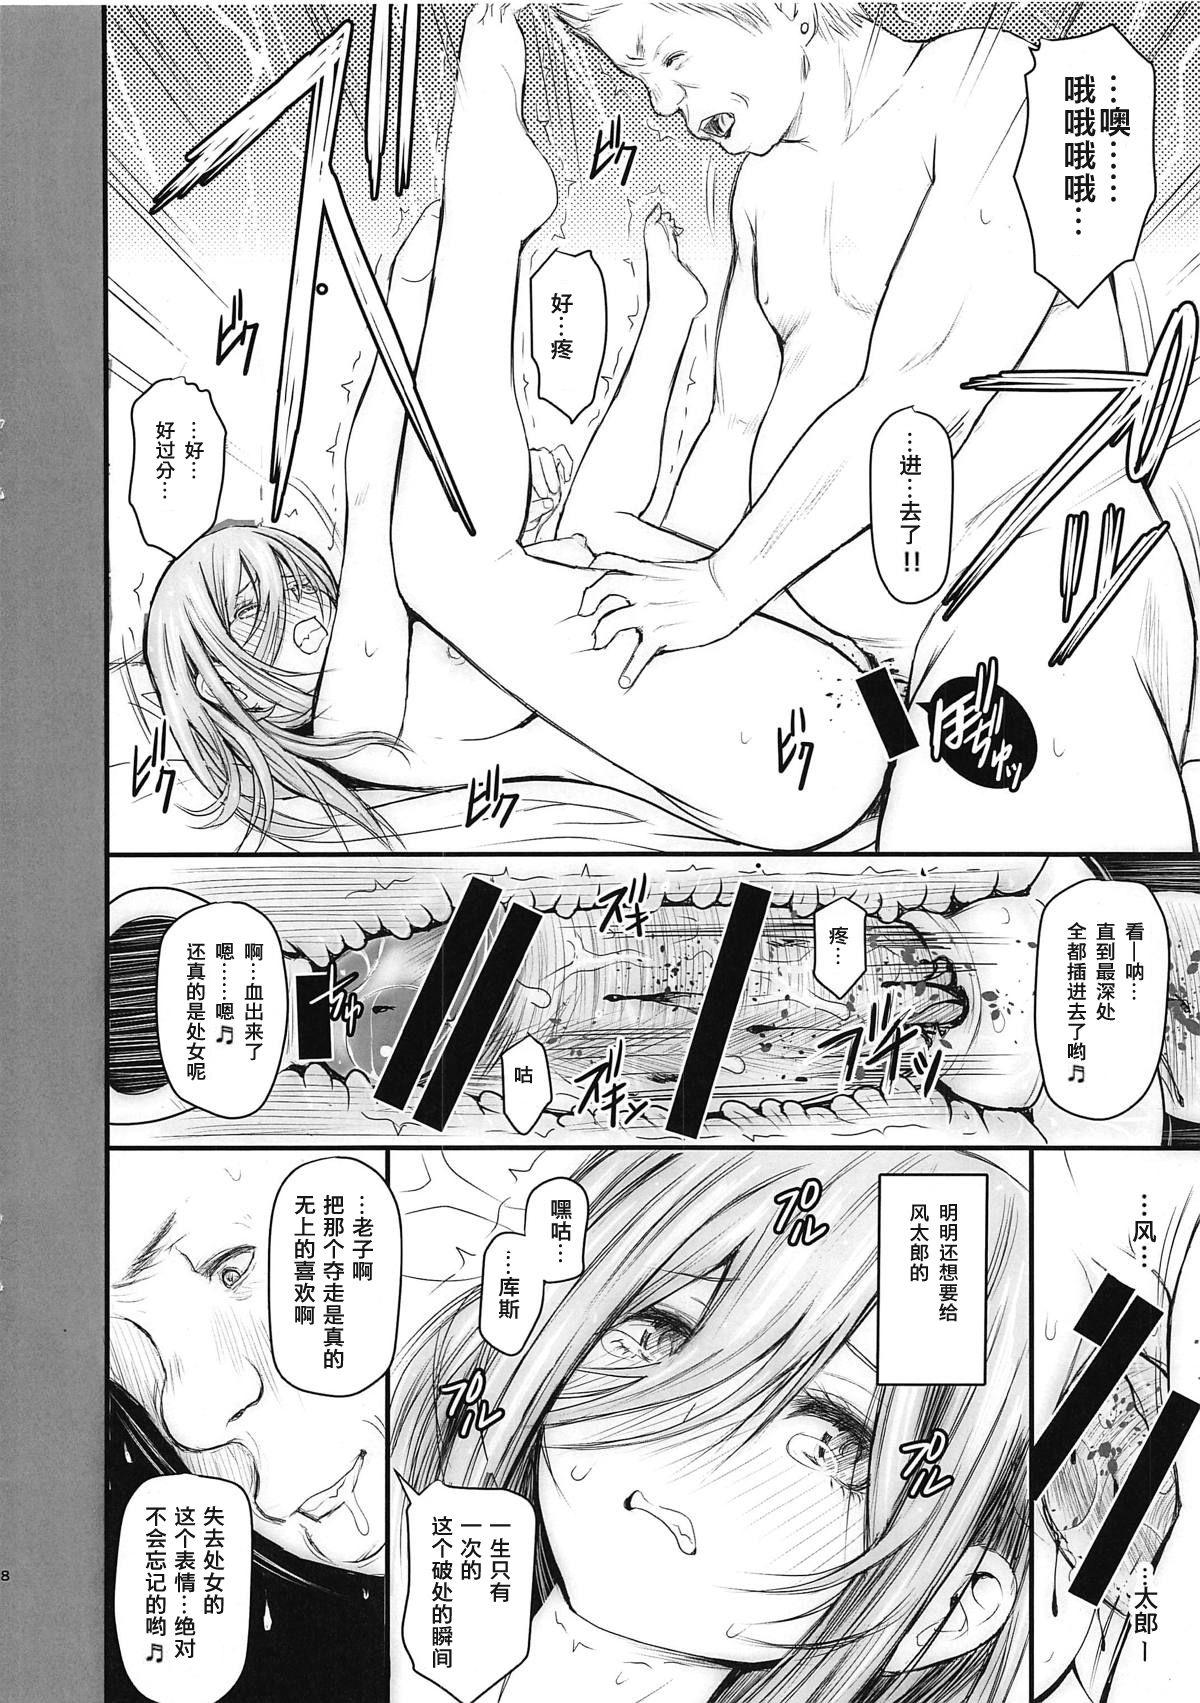 Ikillitts Ore to Miku-chan to Kichiku Senpai - Gotoubun no hanayome X - Page 8